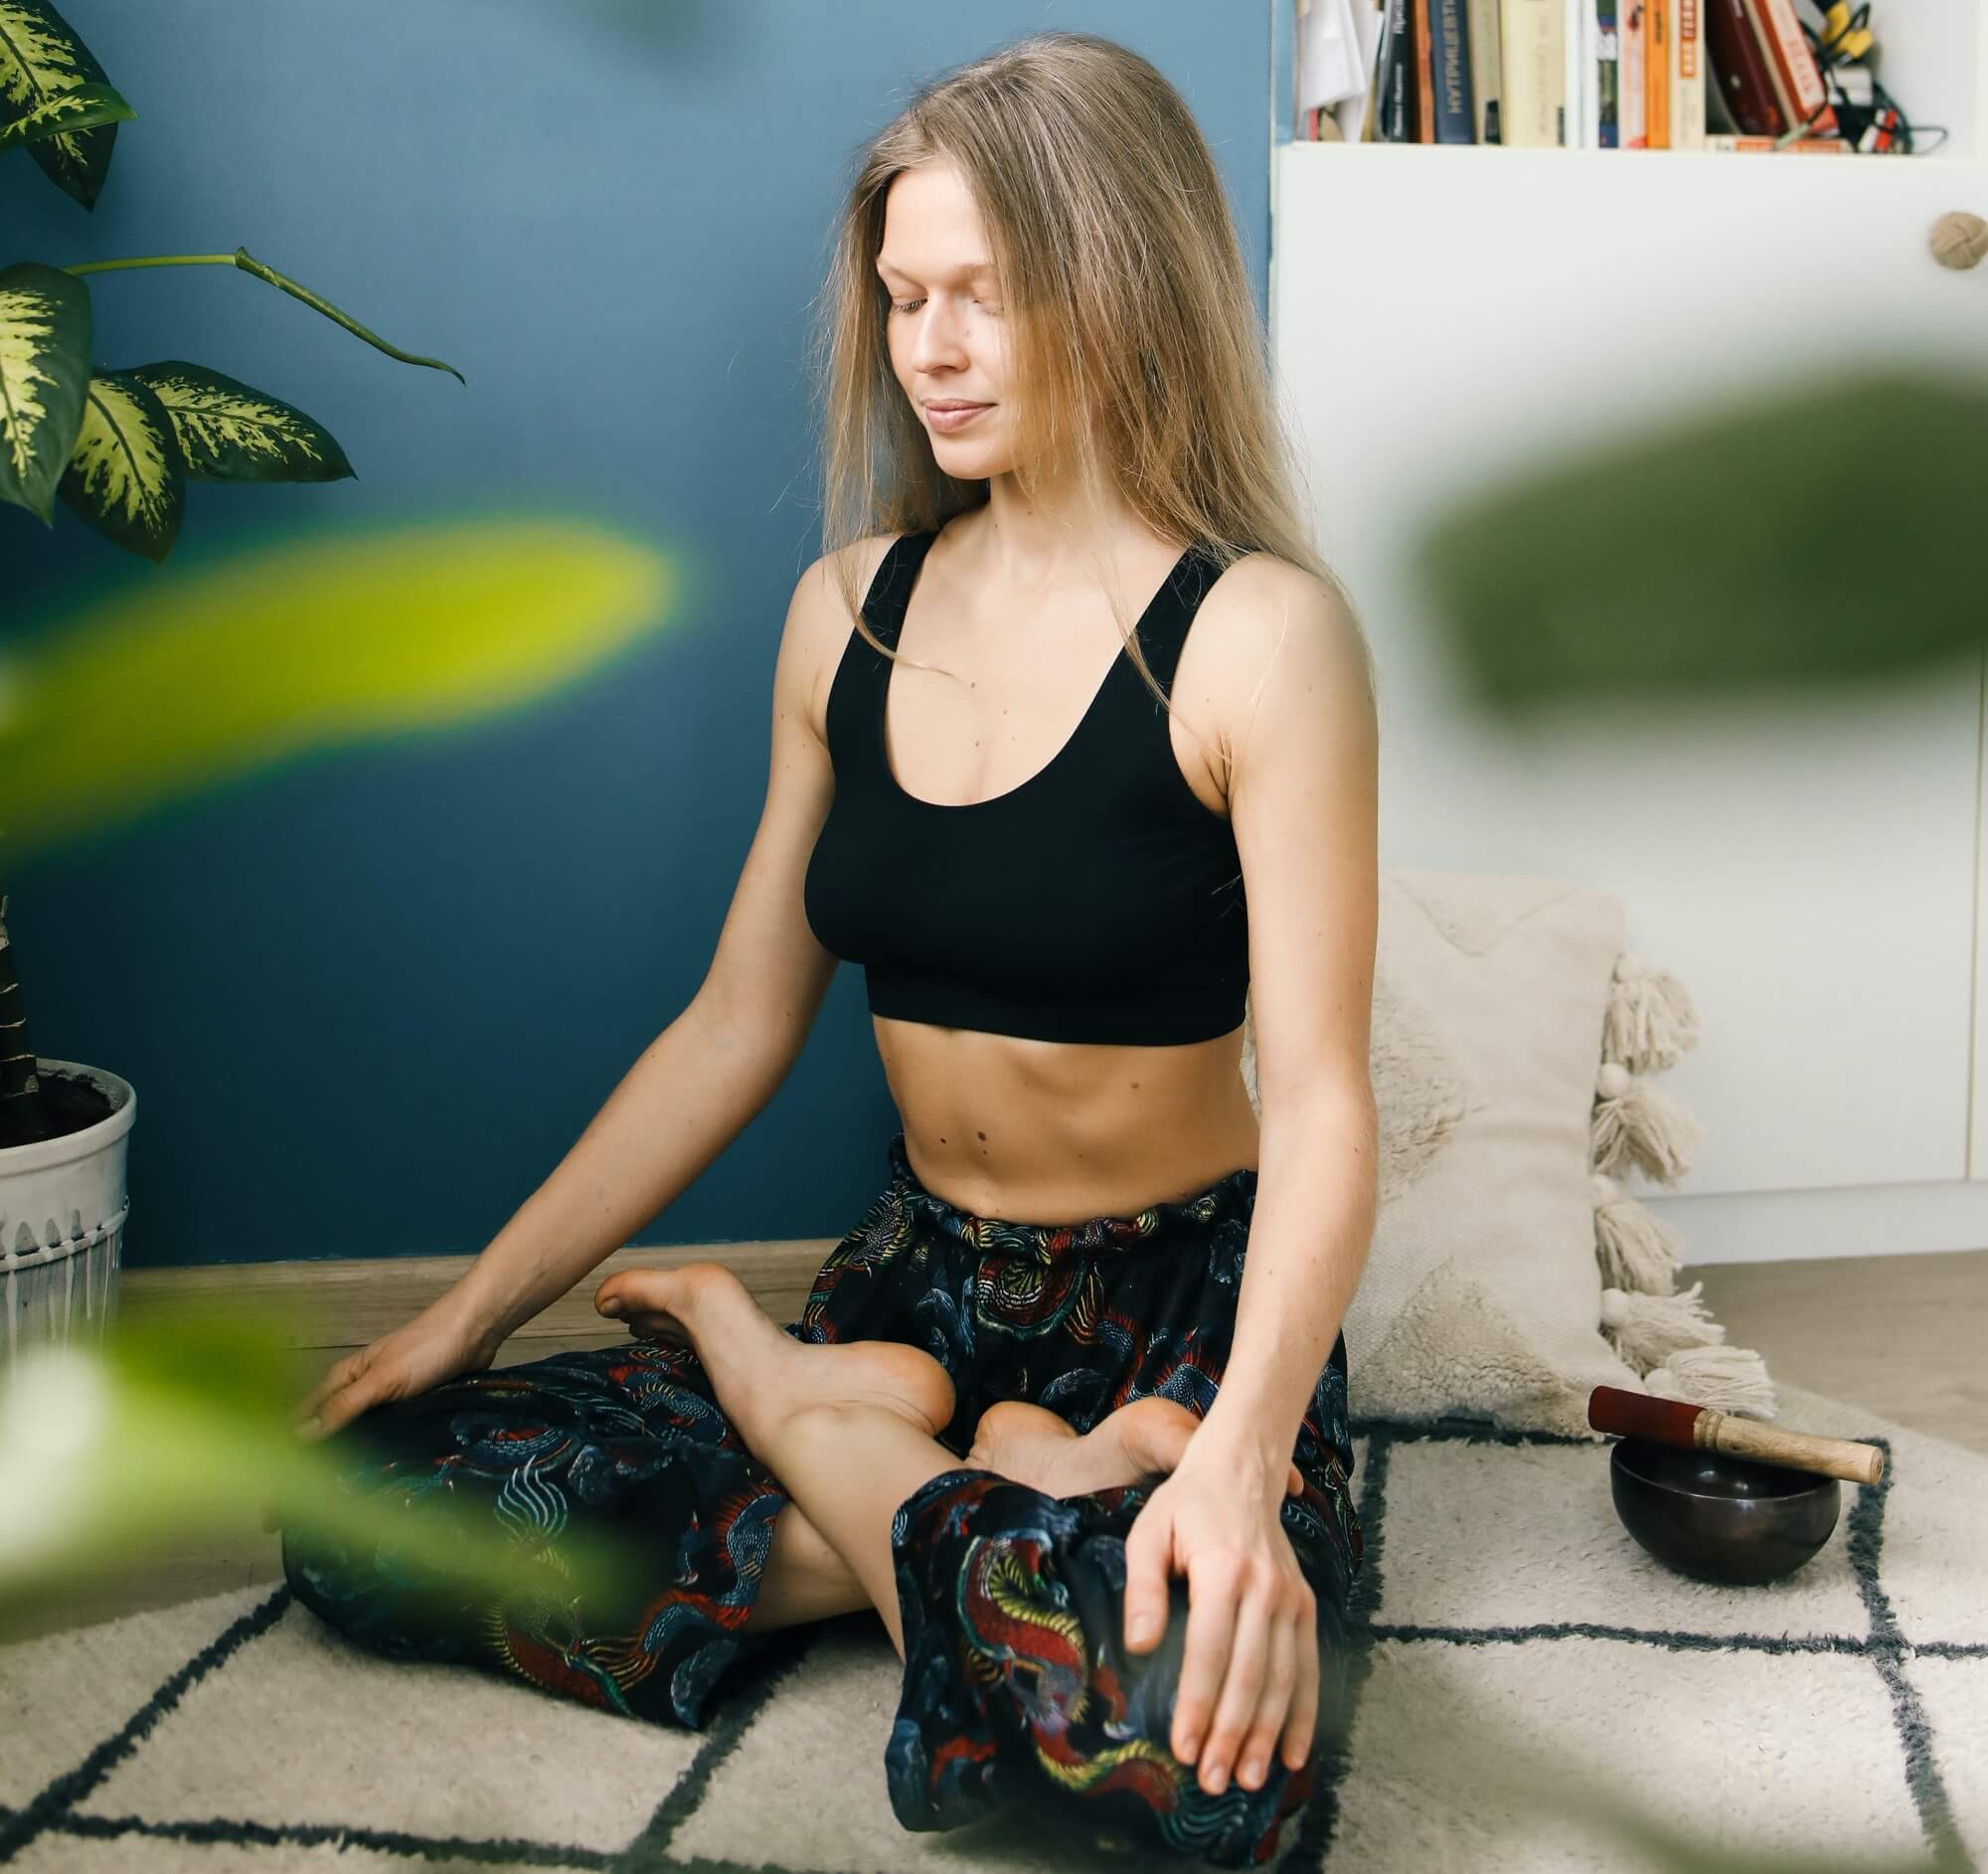 Mulher loira praticando hatha yoga na sala